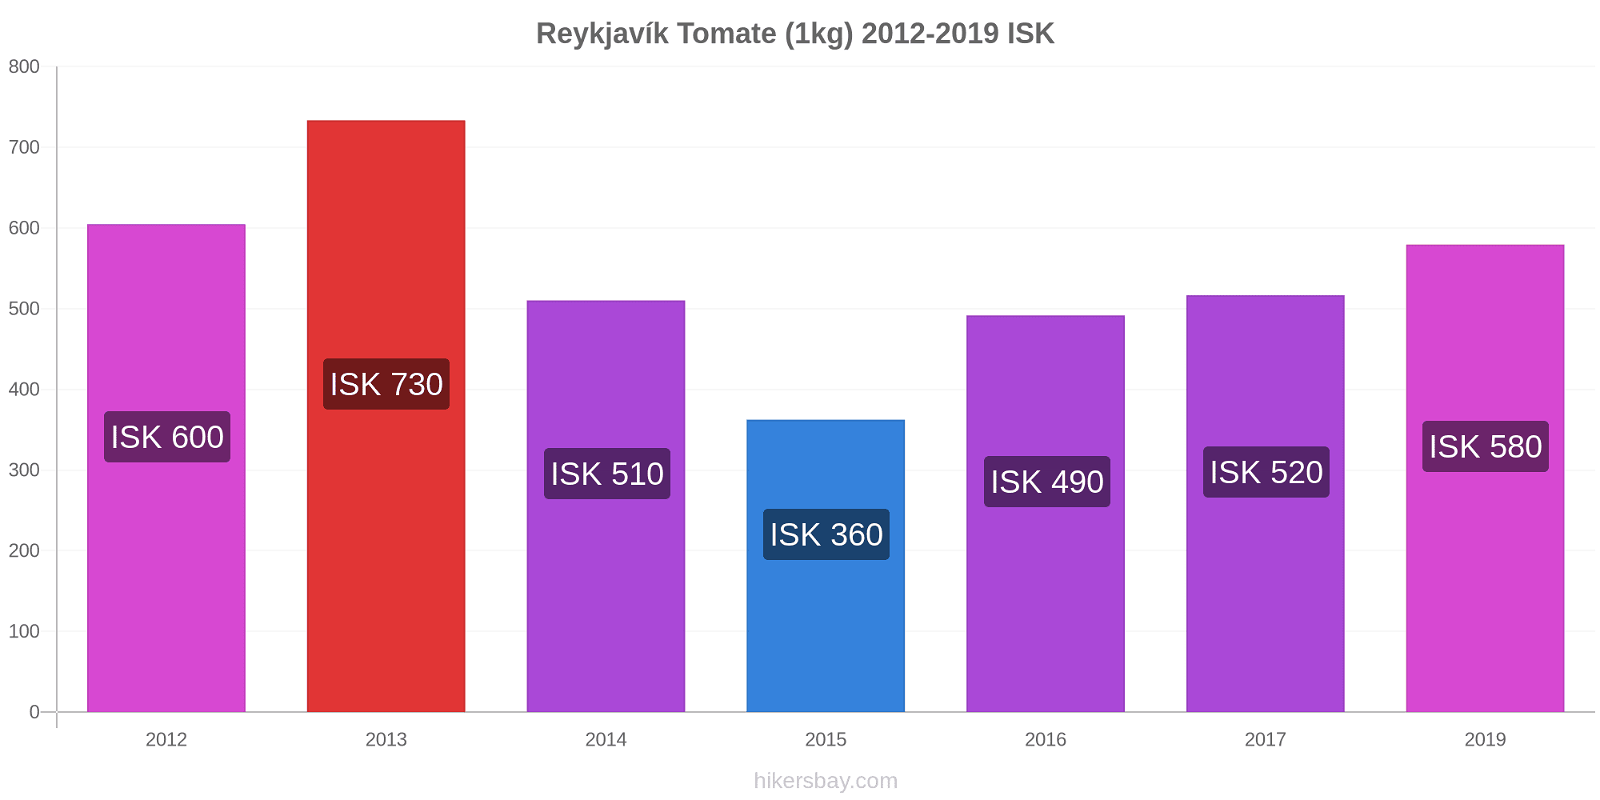 Reykjavík variação de preço Tomate (1kg) hikersbay.com